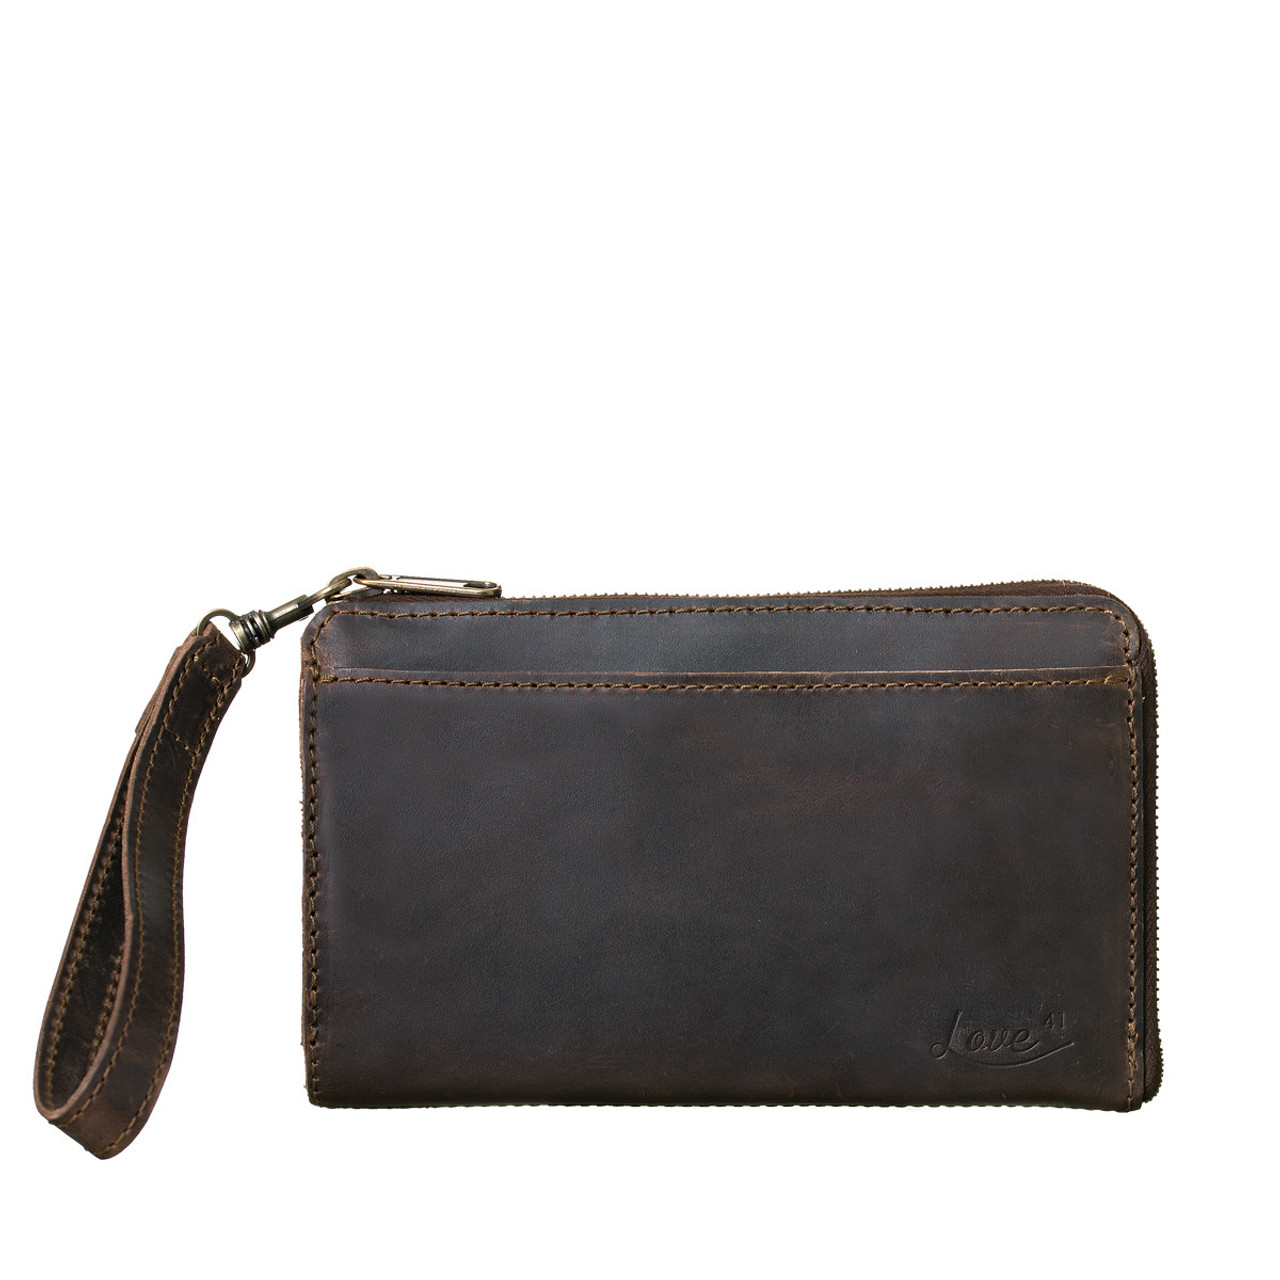 Mens Long Wallet Leather Zipper Large Phone Holder Bag Business Clutch  Handbag